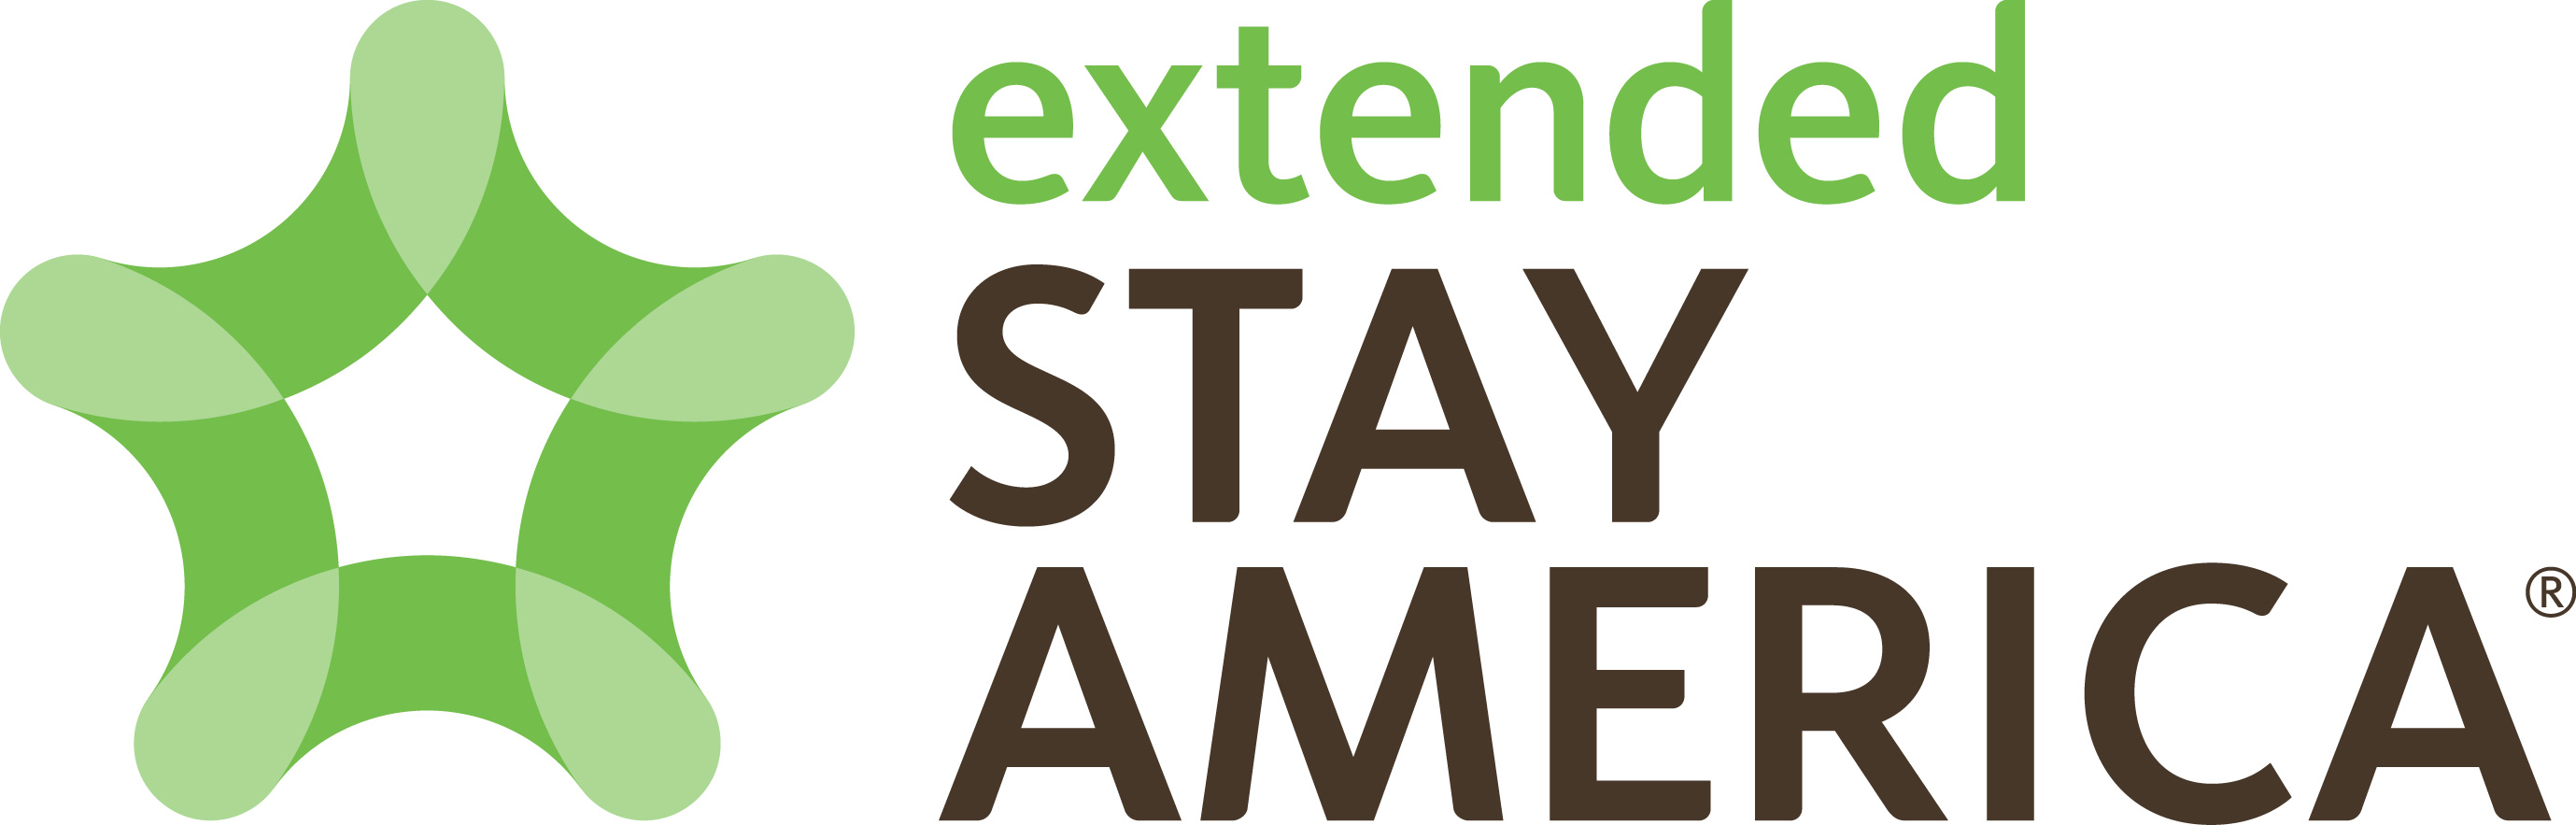 Extended Stay America kondig 20%-groei in sy franchiseportefeulje aan